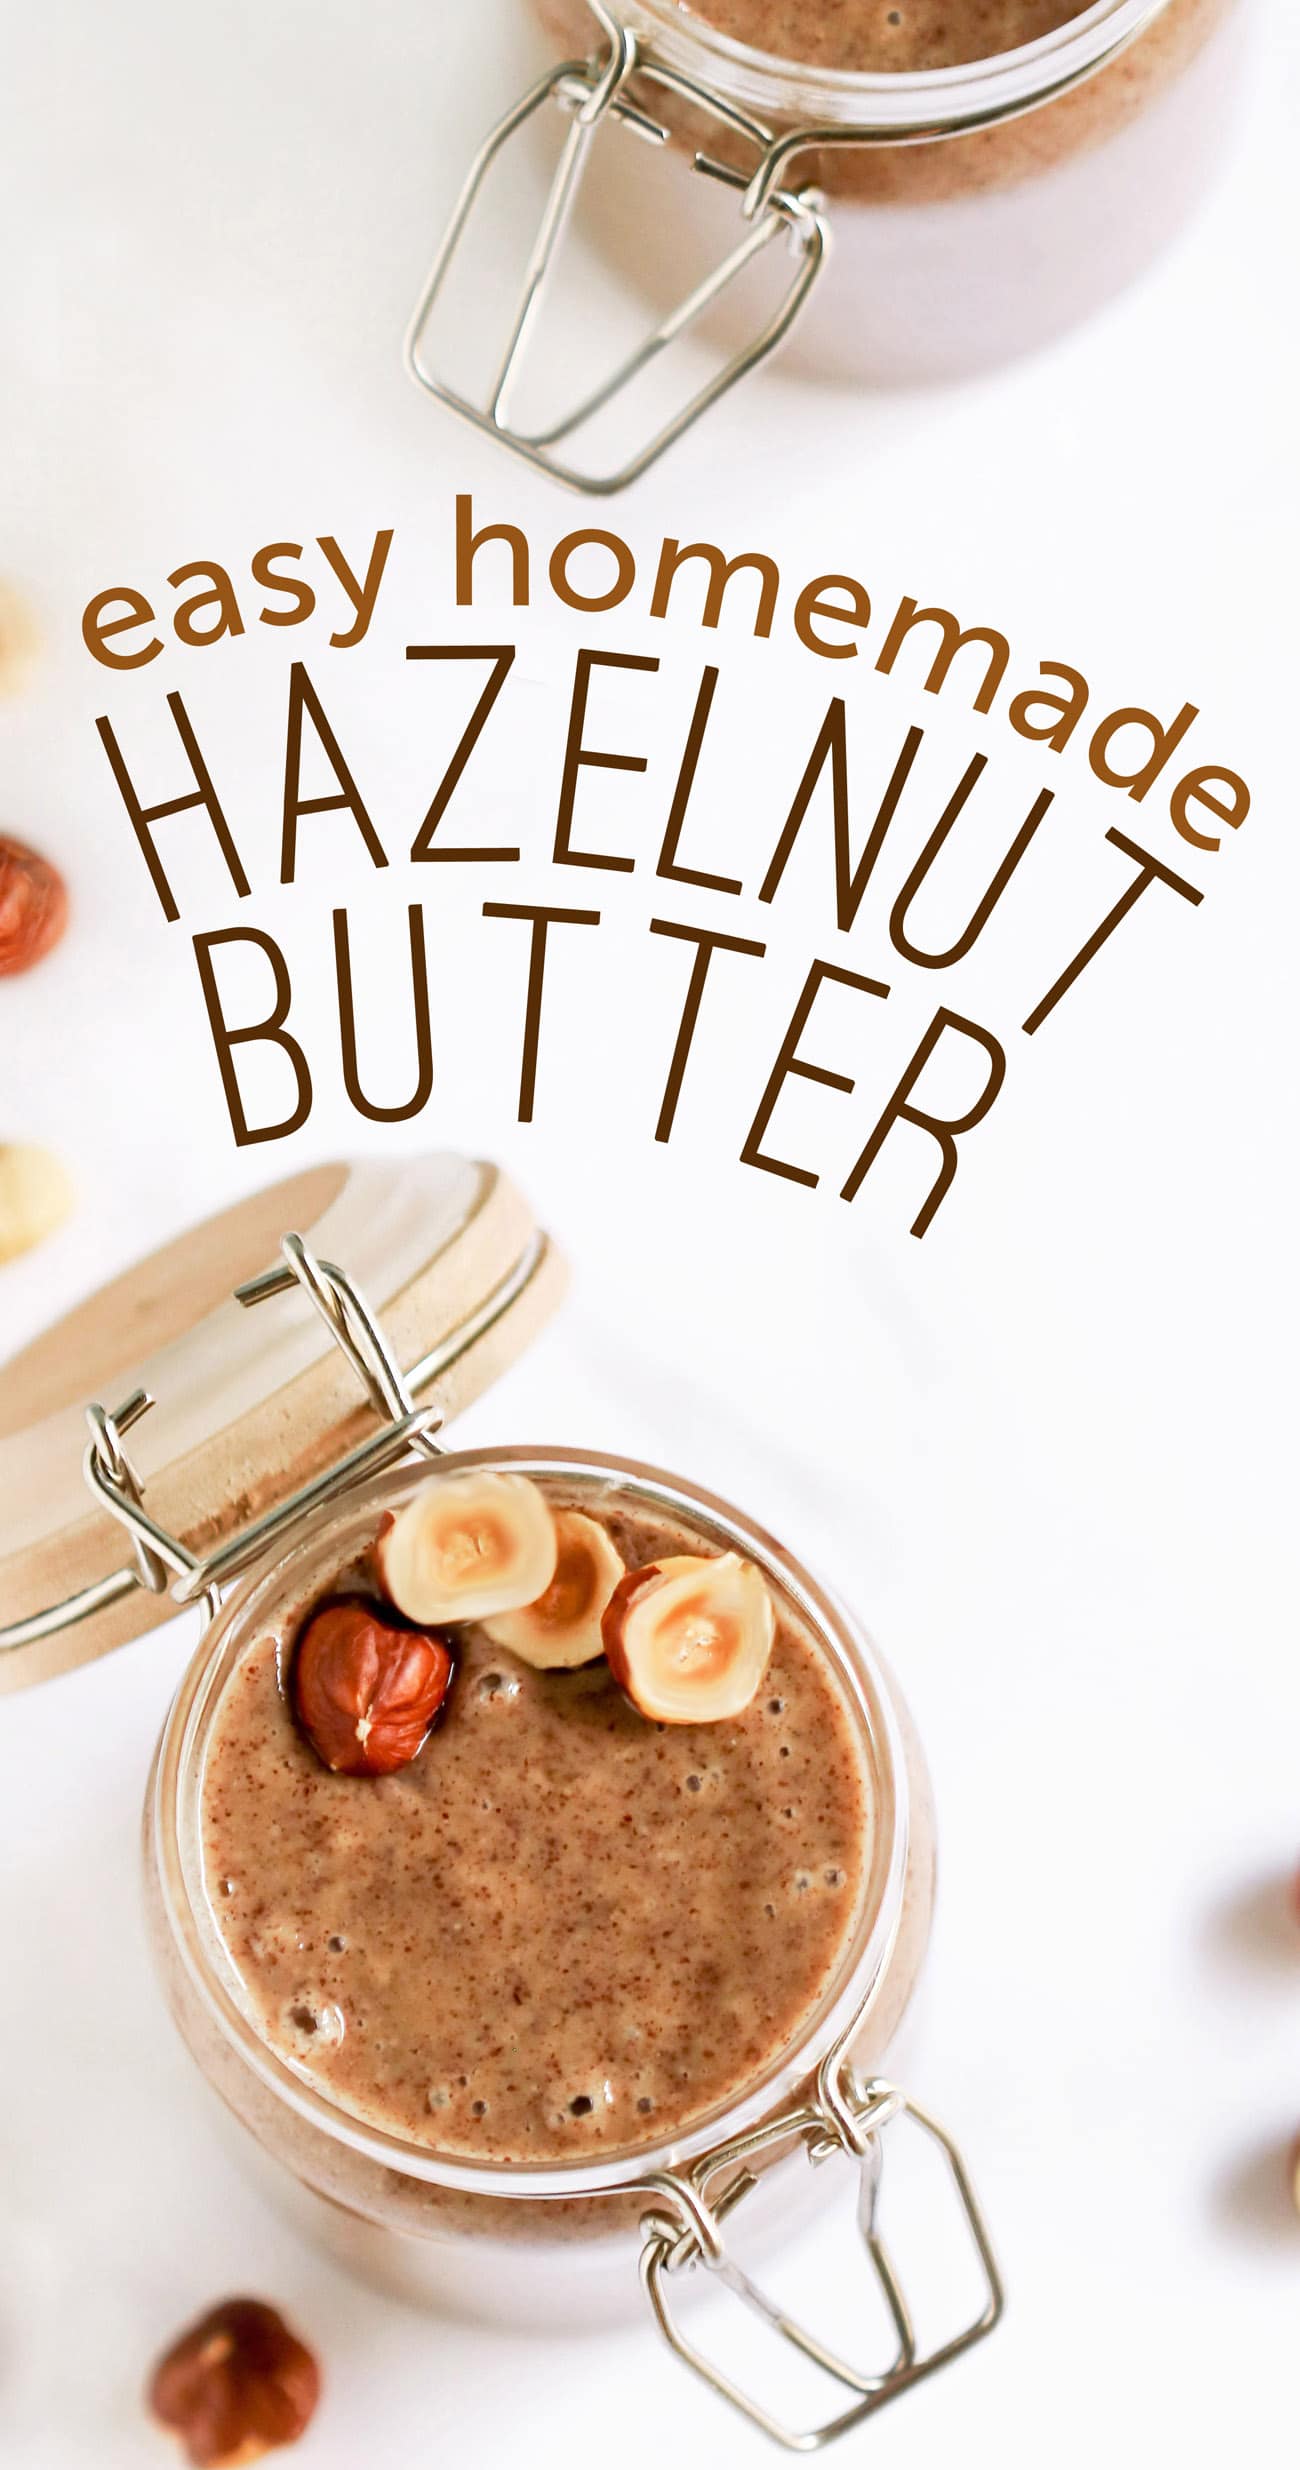 How to Make Hazelnut Butter